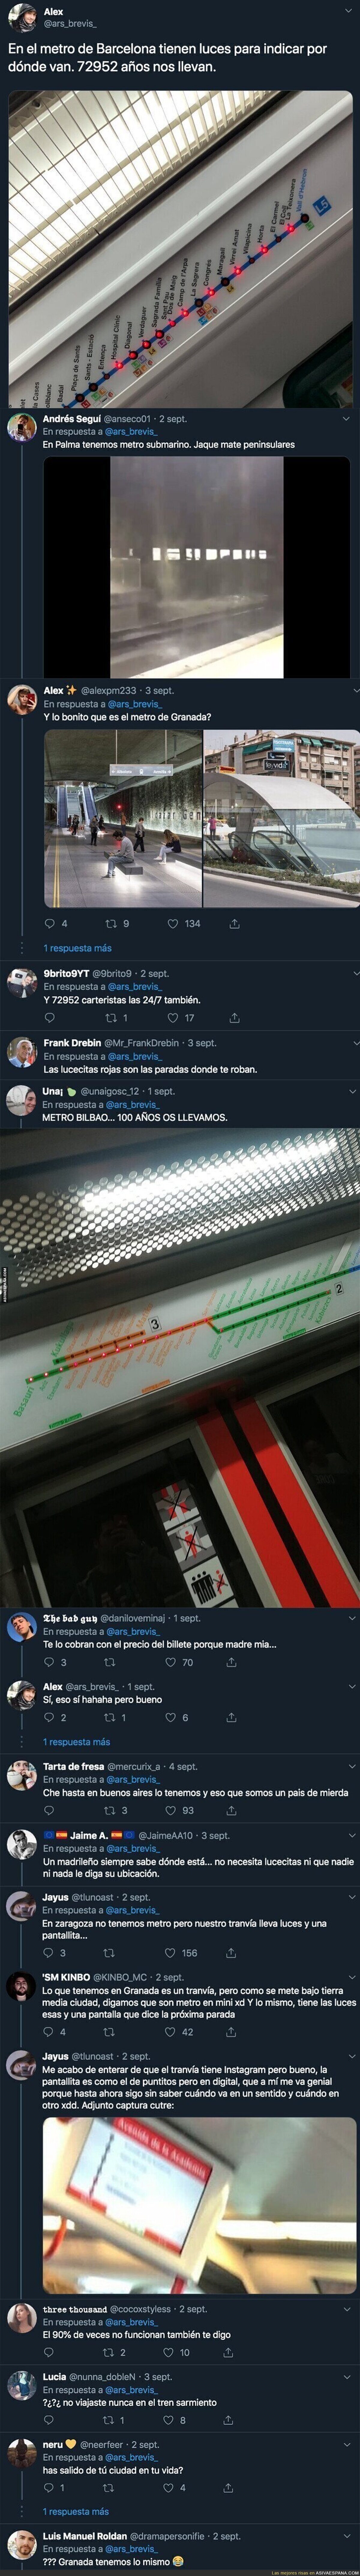 Un chaval destaca que el metro de Barcelona tiene lucecitas para saber en que parada estás y se convierte en la mofa de todos